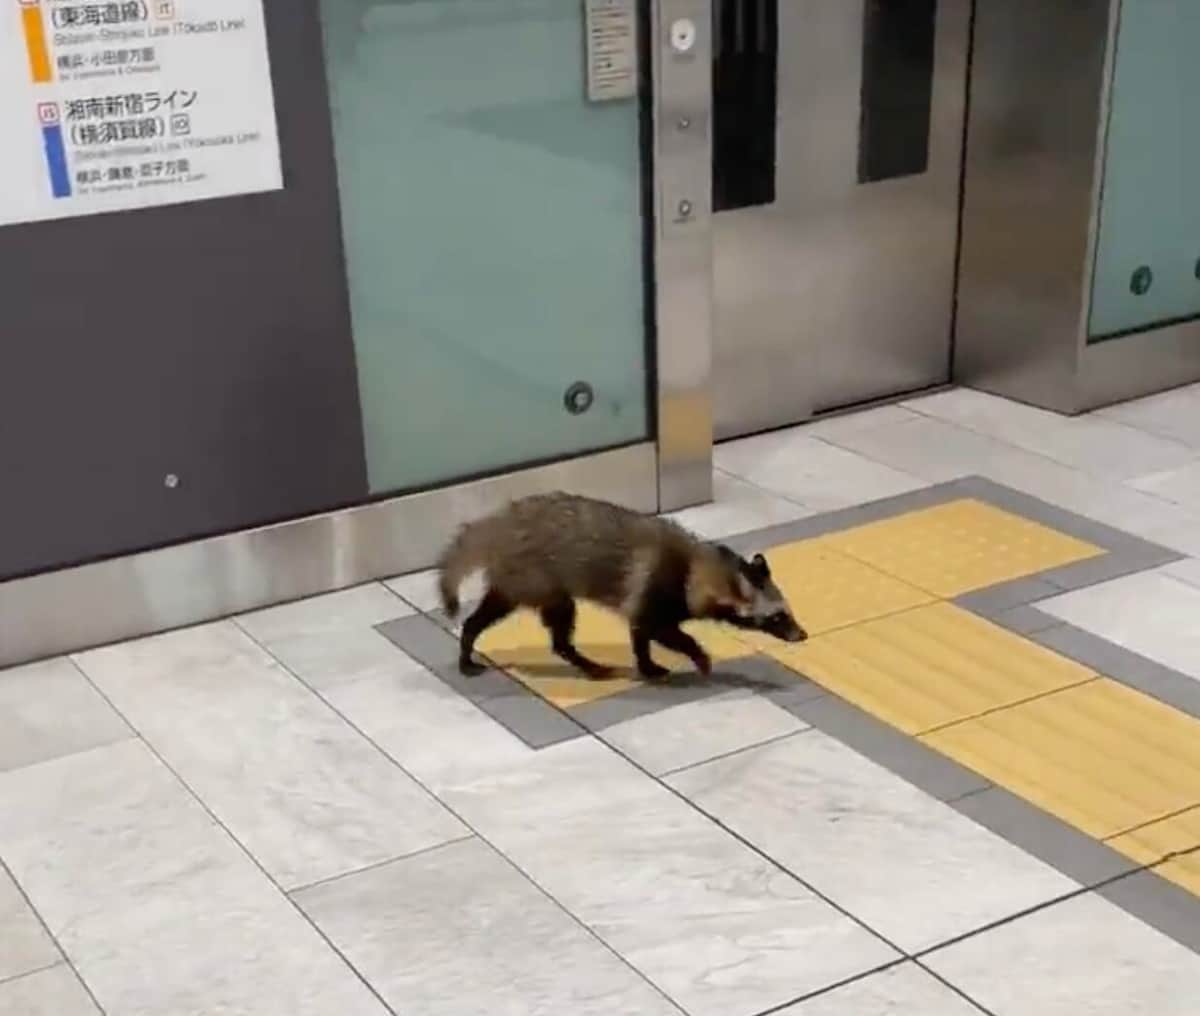 新宿駅のタヌキは「悠然と歩いている感じで意外でした」　ネット騒然の珍客、目撃者とJRに聞く当時の状況